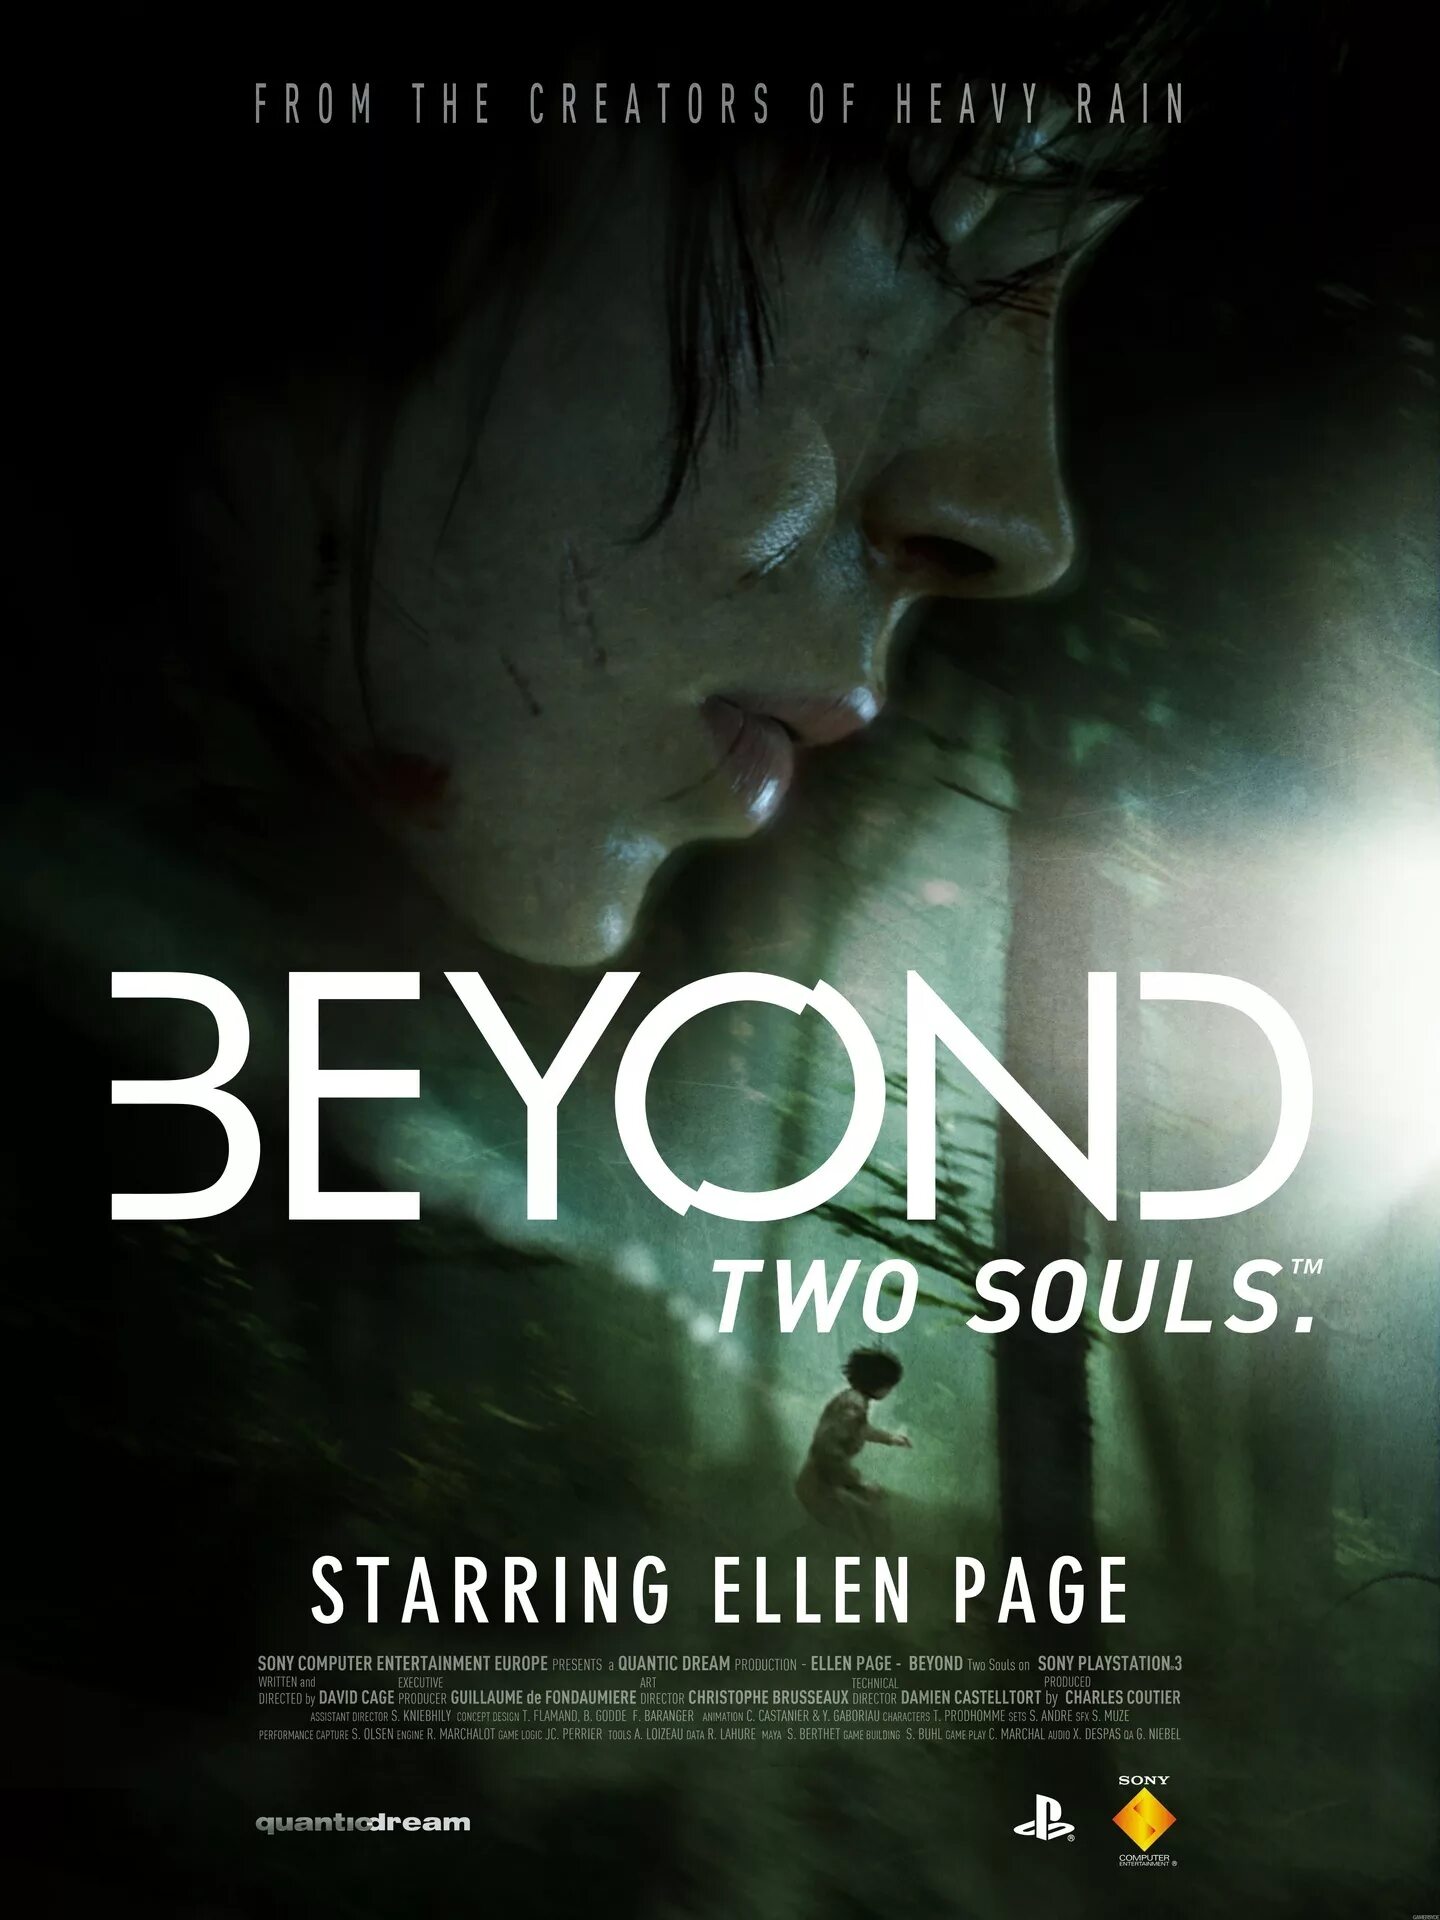 Игра за гранью 2 души. Beyond two Souls poster. Beyond two Souls Постер. За гранью: две души / Beyond: two Souls.